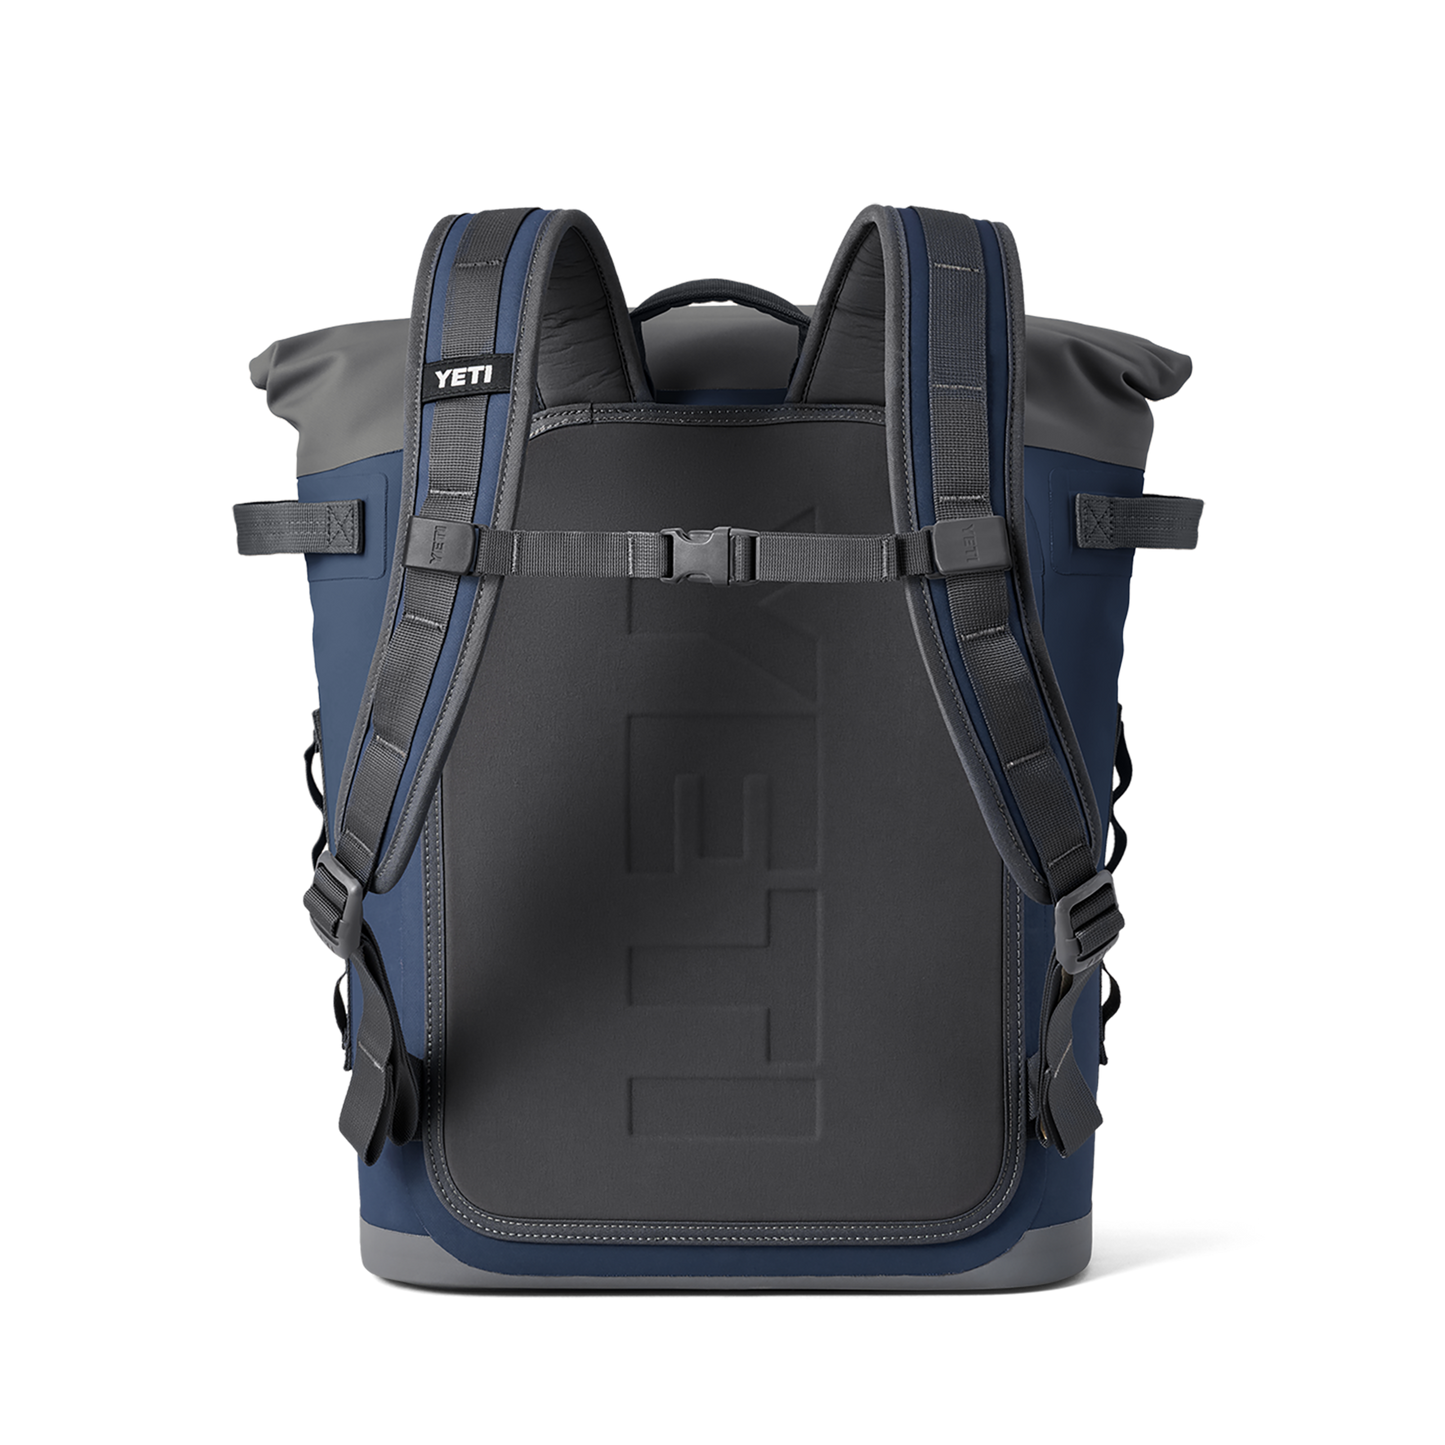 YETI Hopper M20 Soft Backpack Cooler, Navy